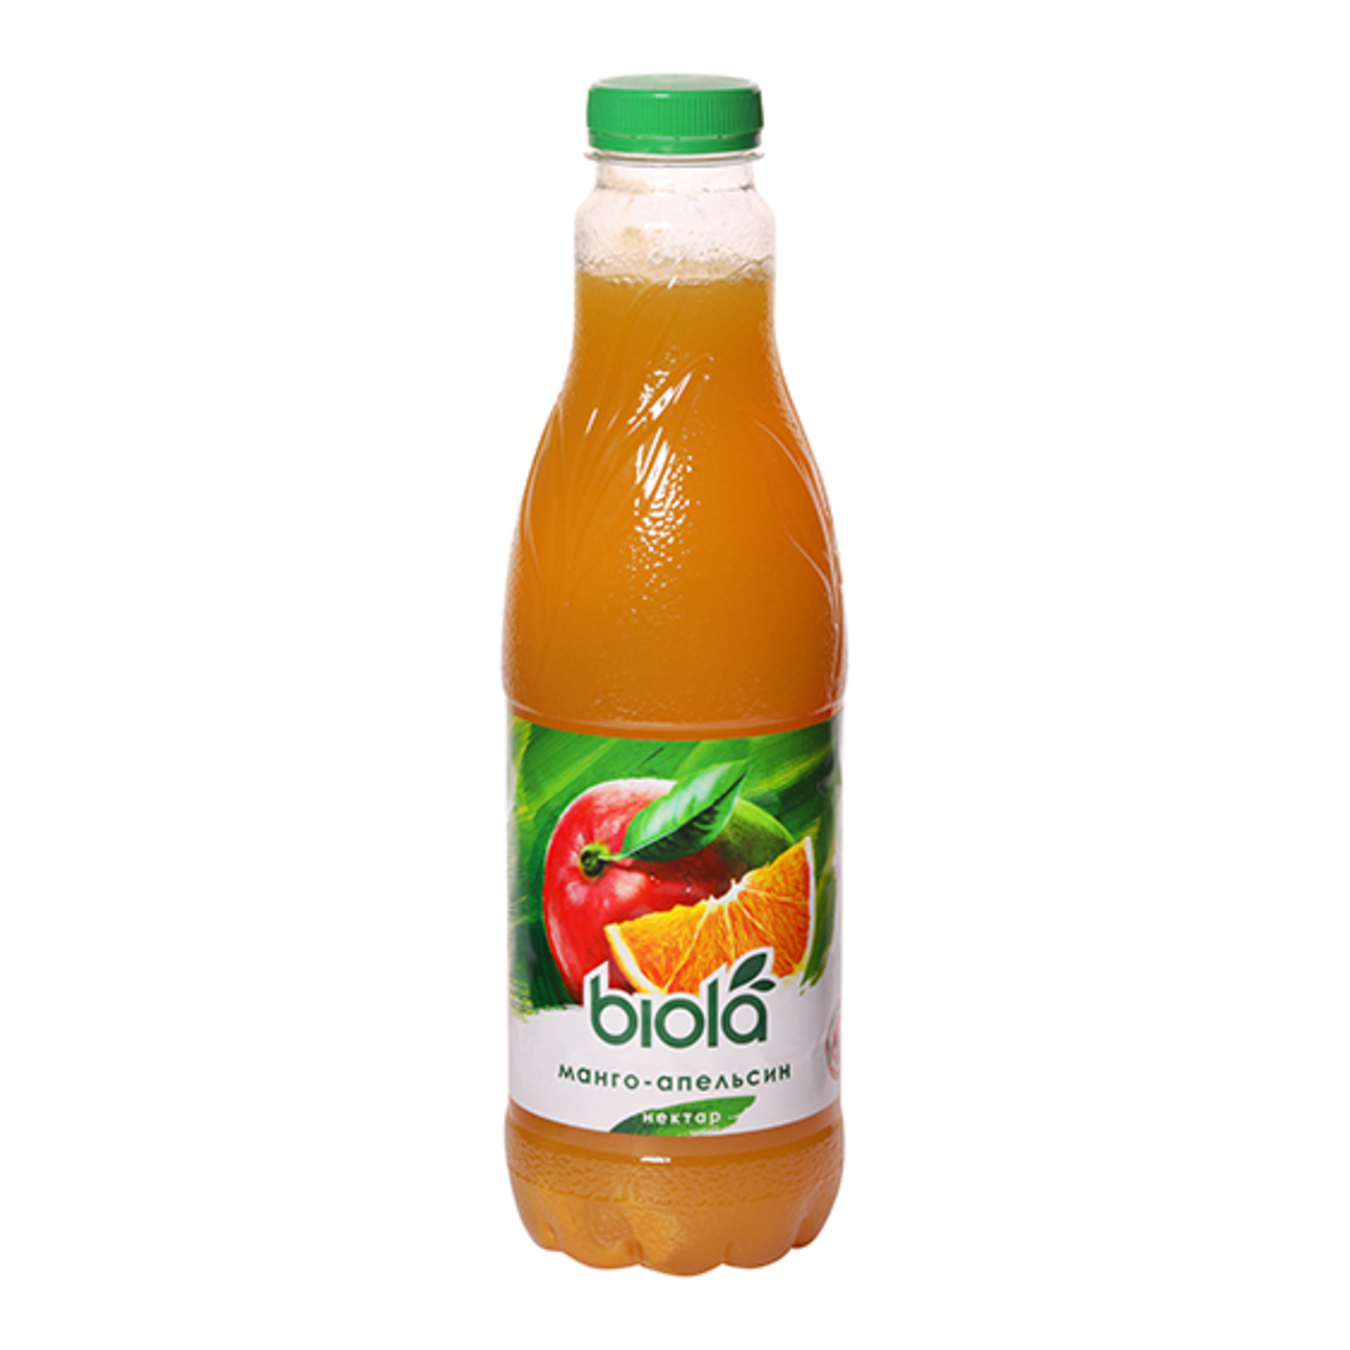 Nectar Biola mango-orange Unclarified pasteurized blended 1000ml